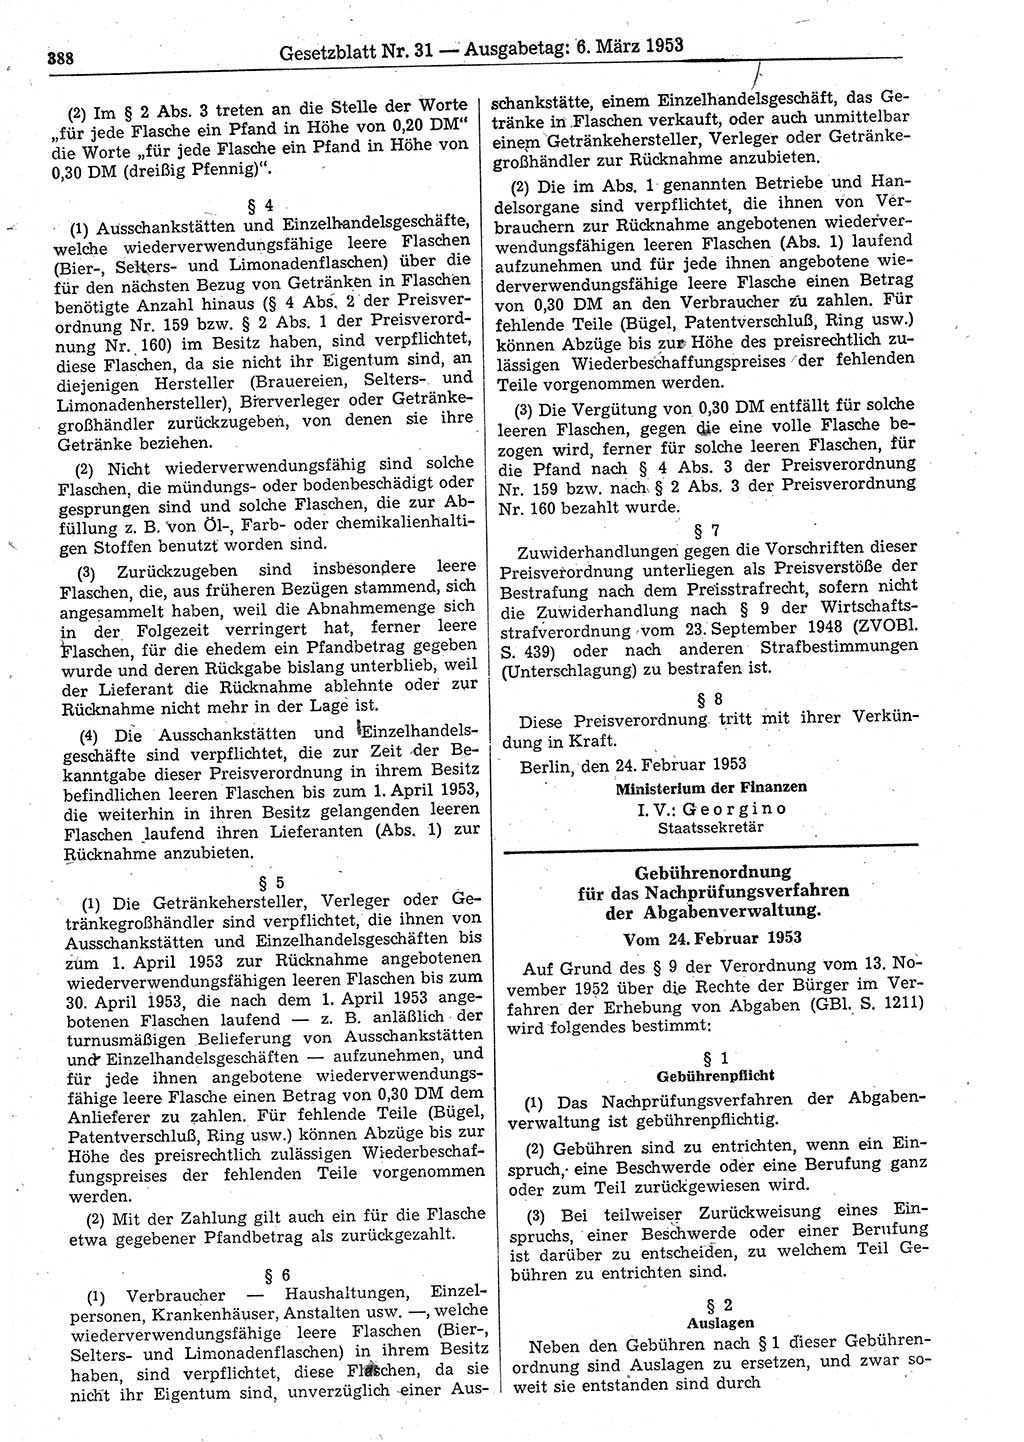 Gesetzblatt (GBl.) der Deutschen Demokratischen Republik (DDR) 1953, Seite 388 (GBl. DDR 1953, S. 388)